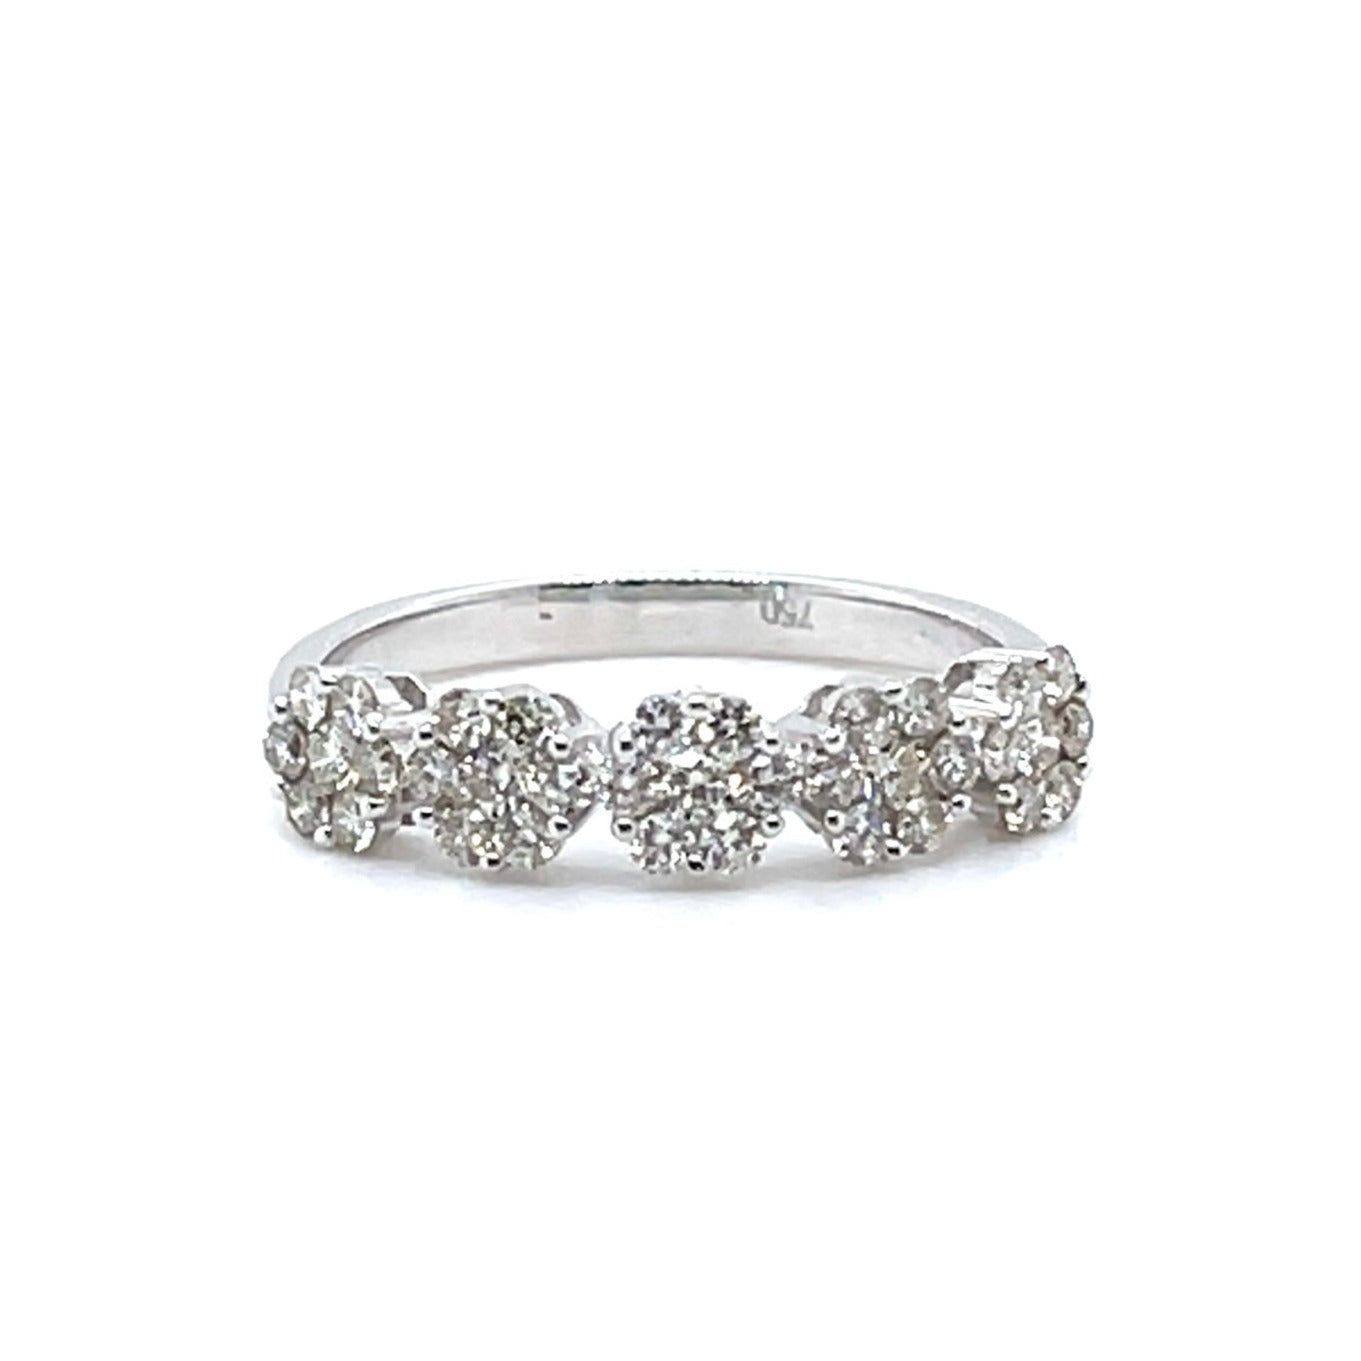 'Mia' 18ct white gold diamond cluster ring